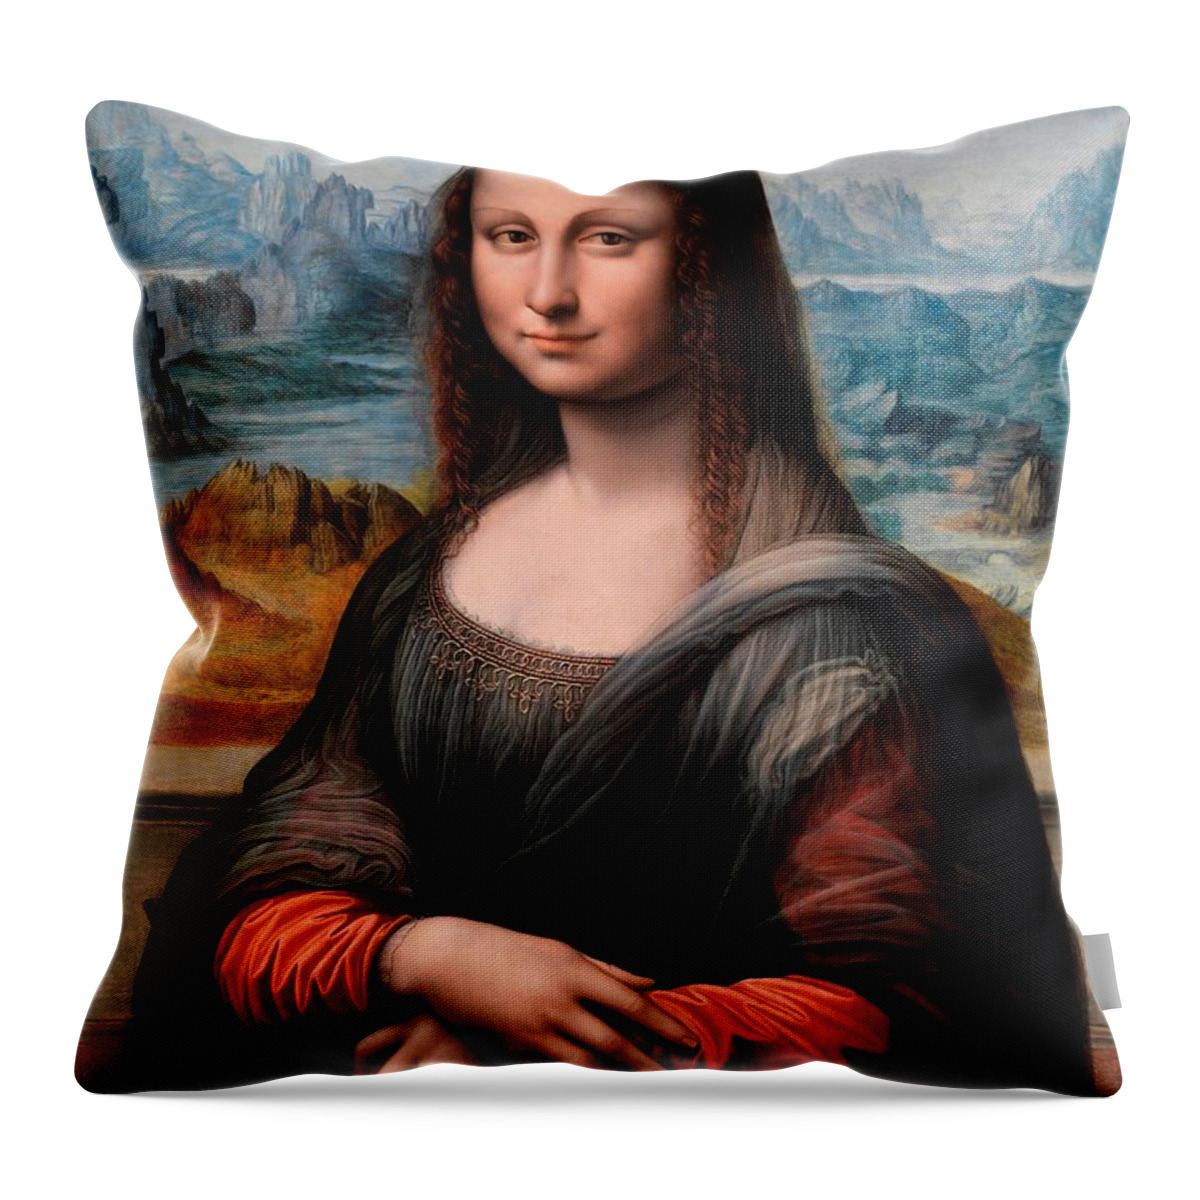 Leonardo Da Vinci Throw Pillow featuring the painting El Prado La Gioconda by Leonardo da Vinci